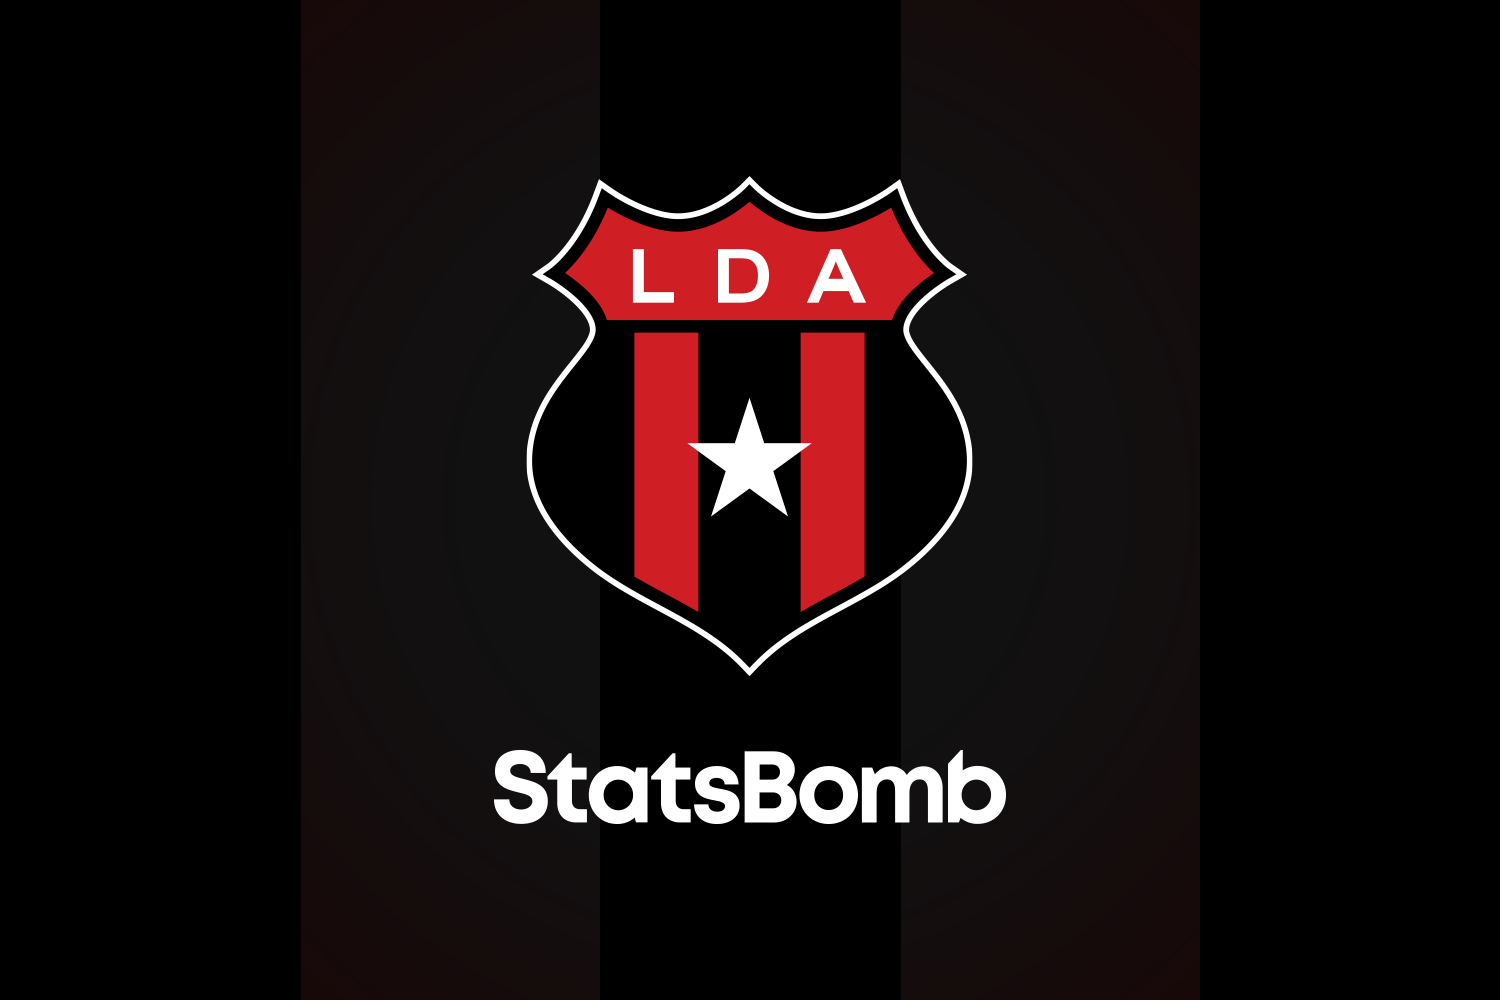 StatsBomb prosigue con su expansión en Latinoamérica al firmar un acuerdo con Liga Deportiva Alajuelense